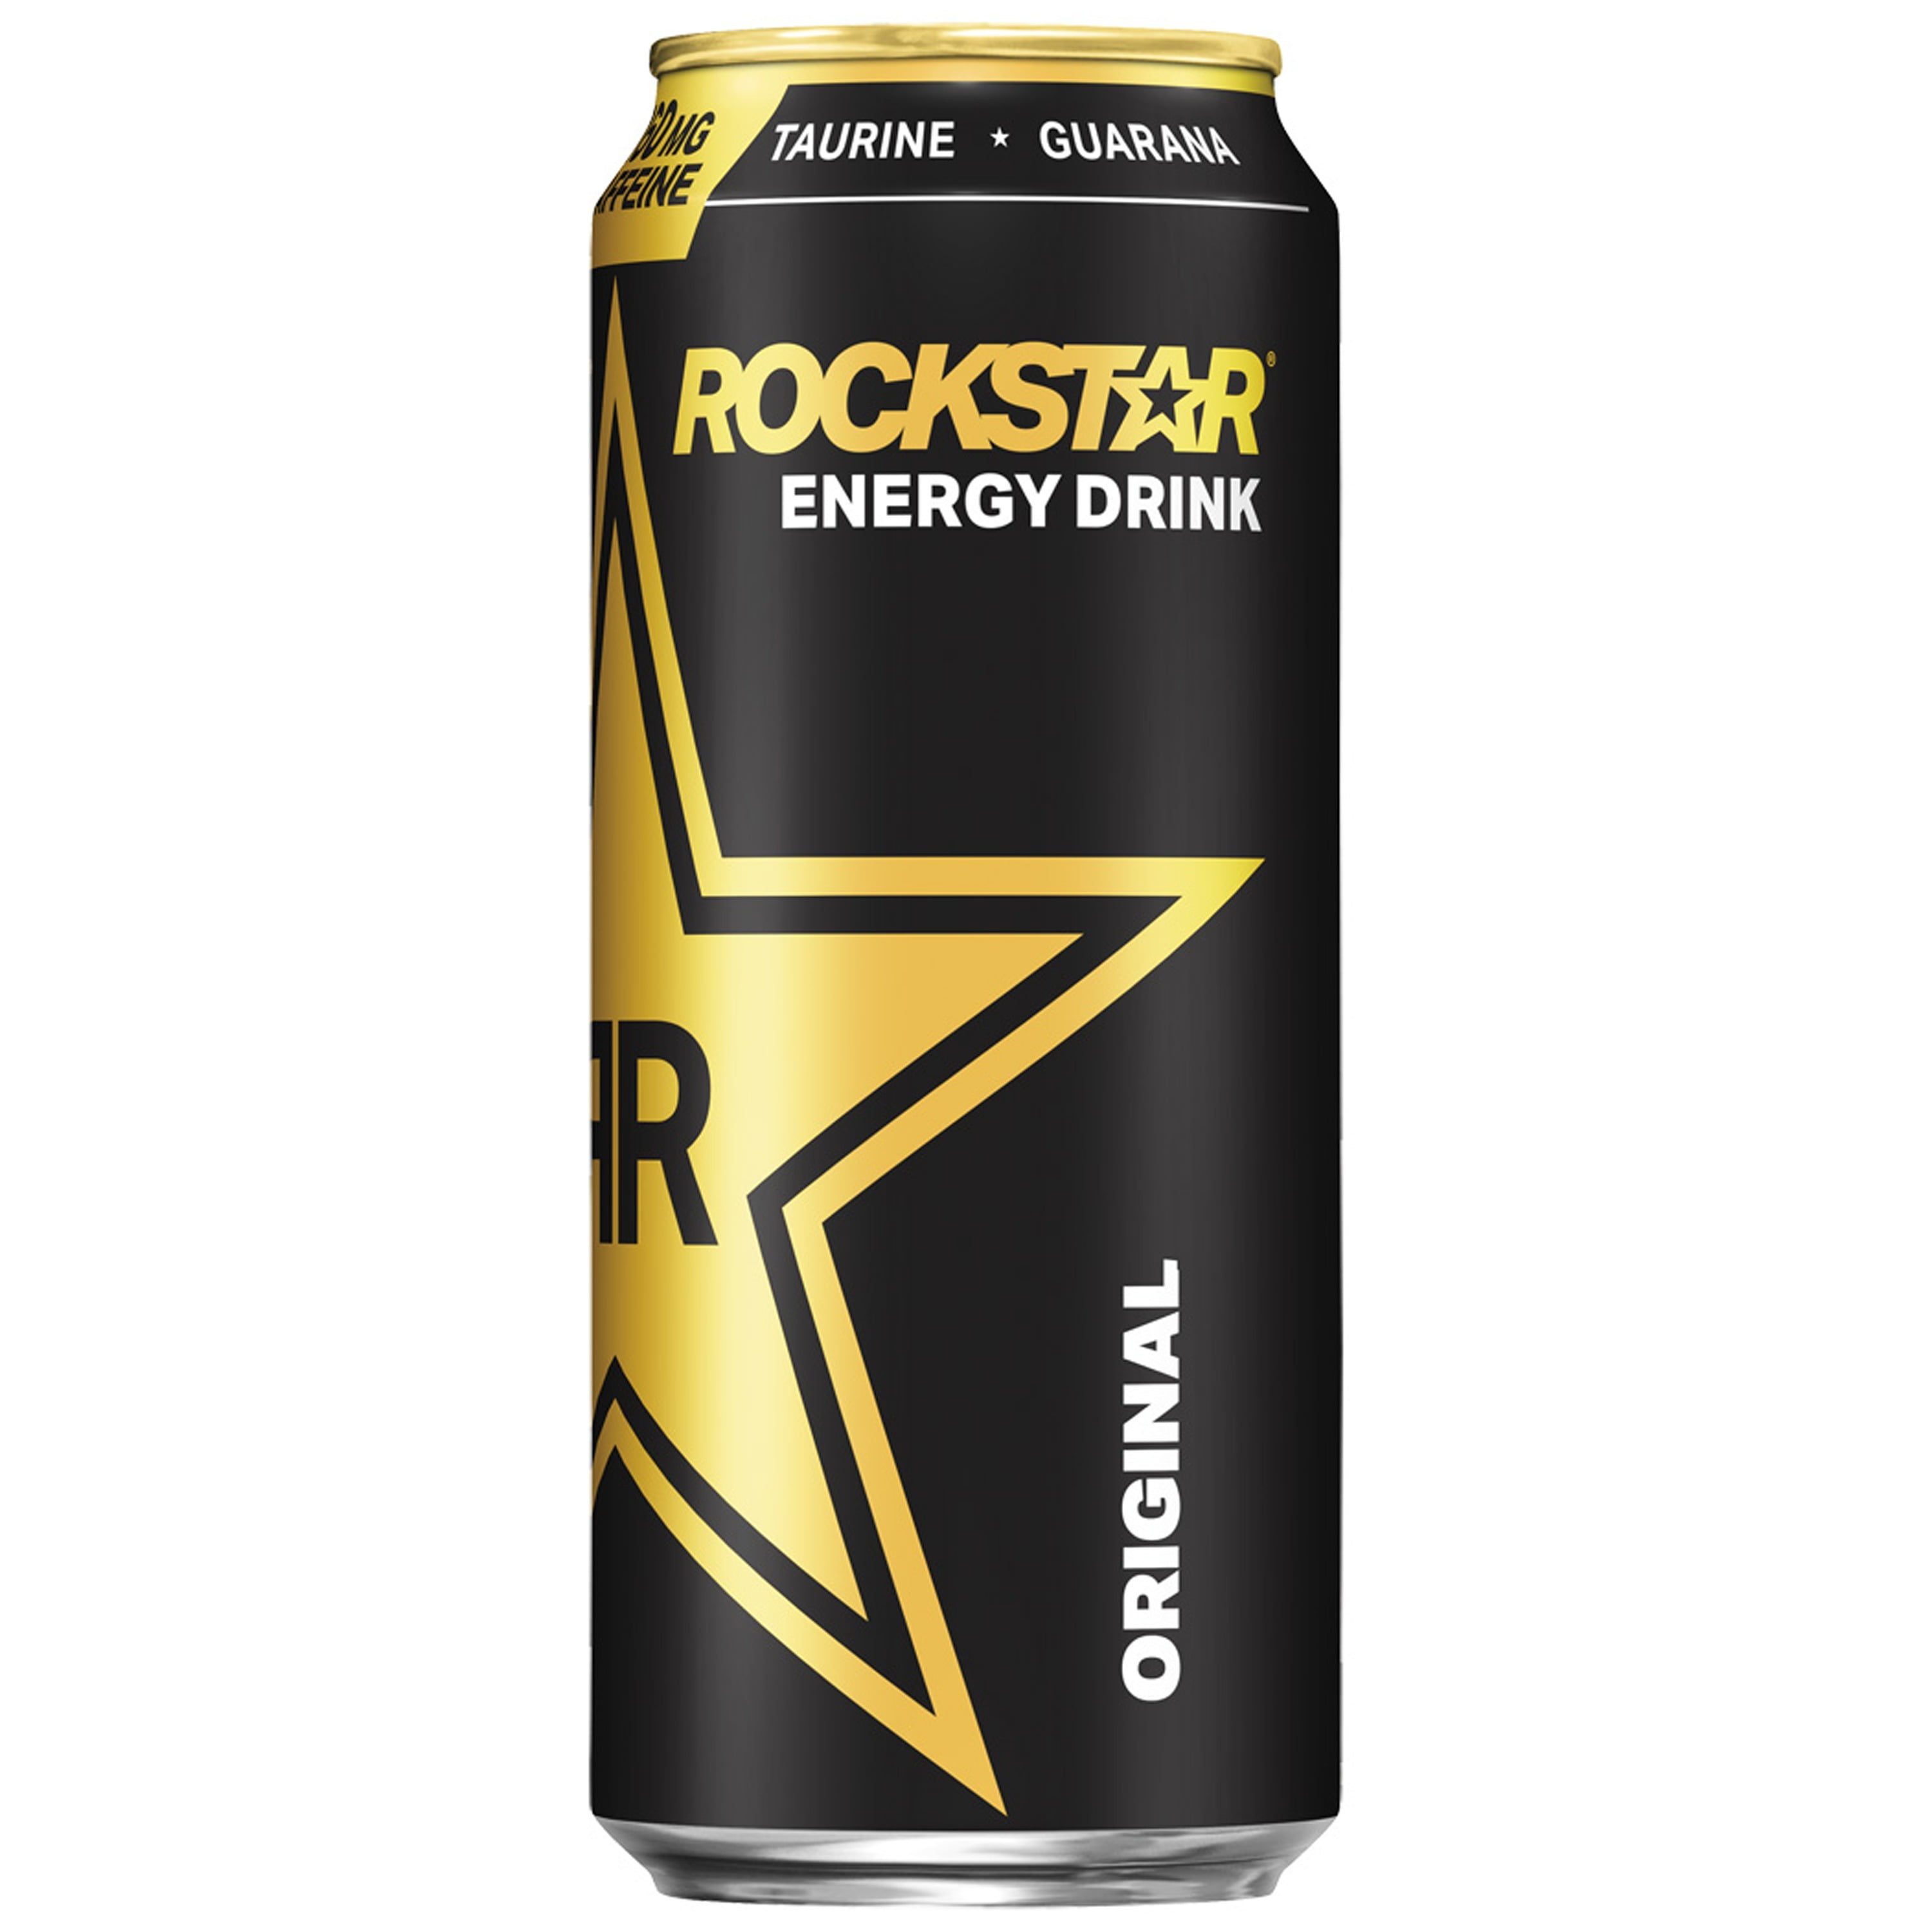 rockstar energy drink original flavor